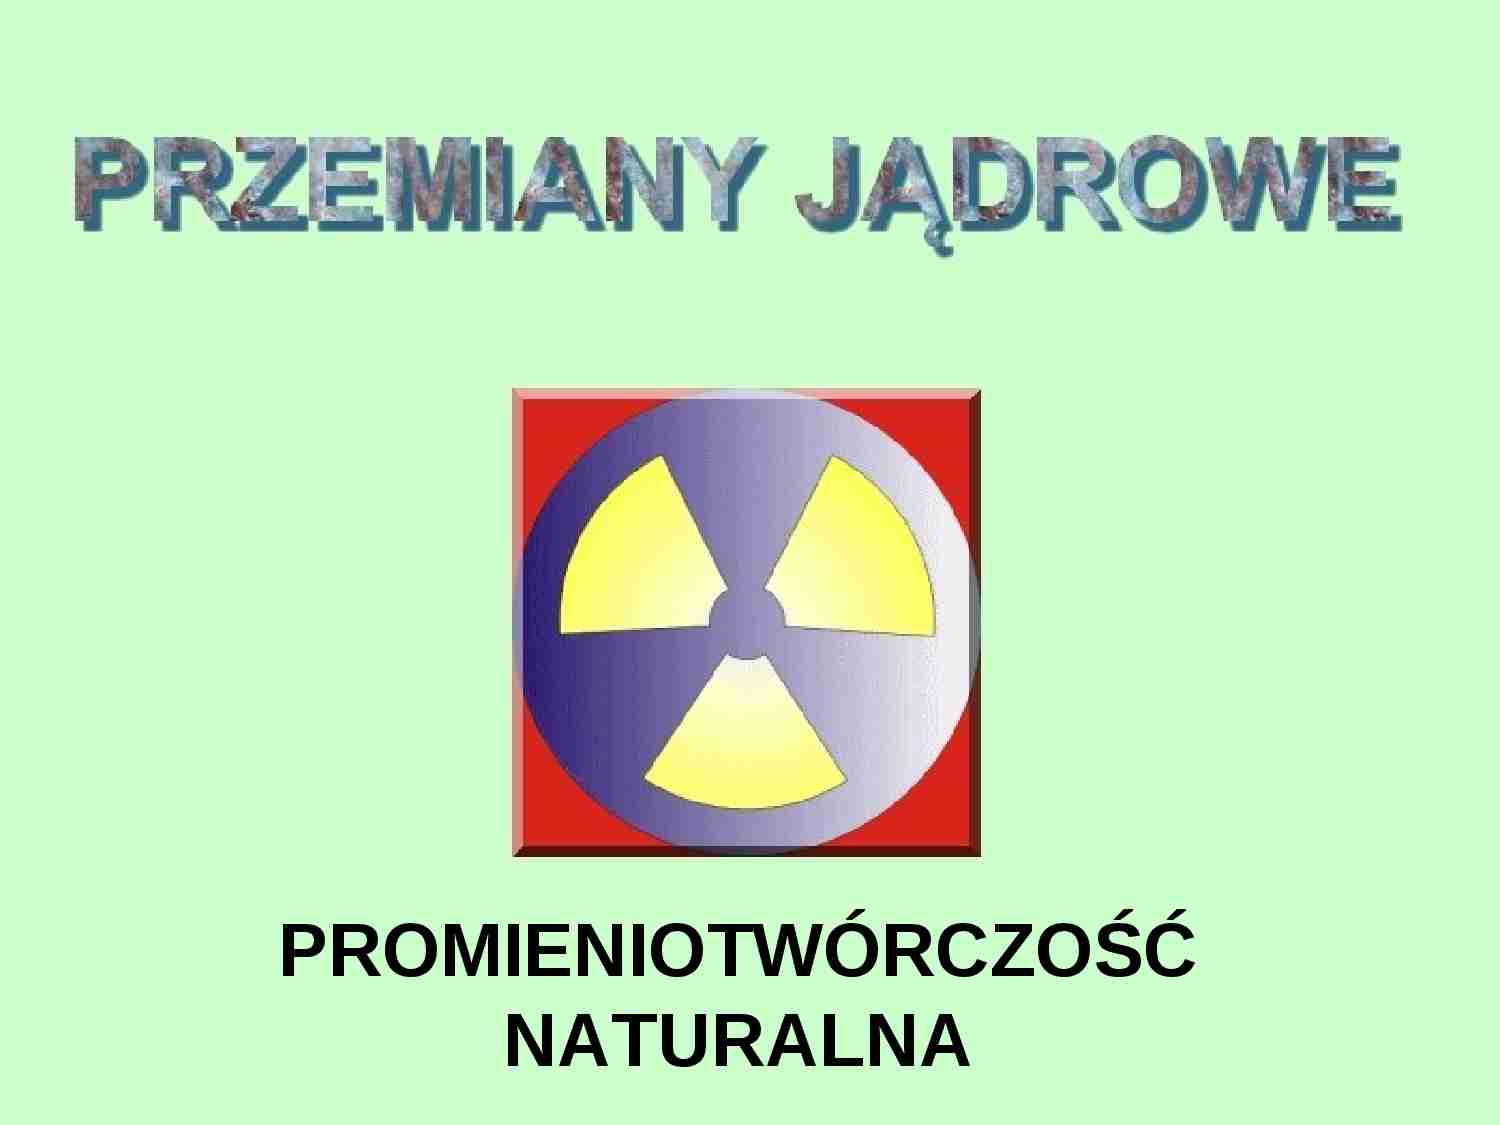 Przemiany jądrowe: promieniotwórczość naturalna - strona 1